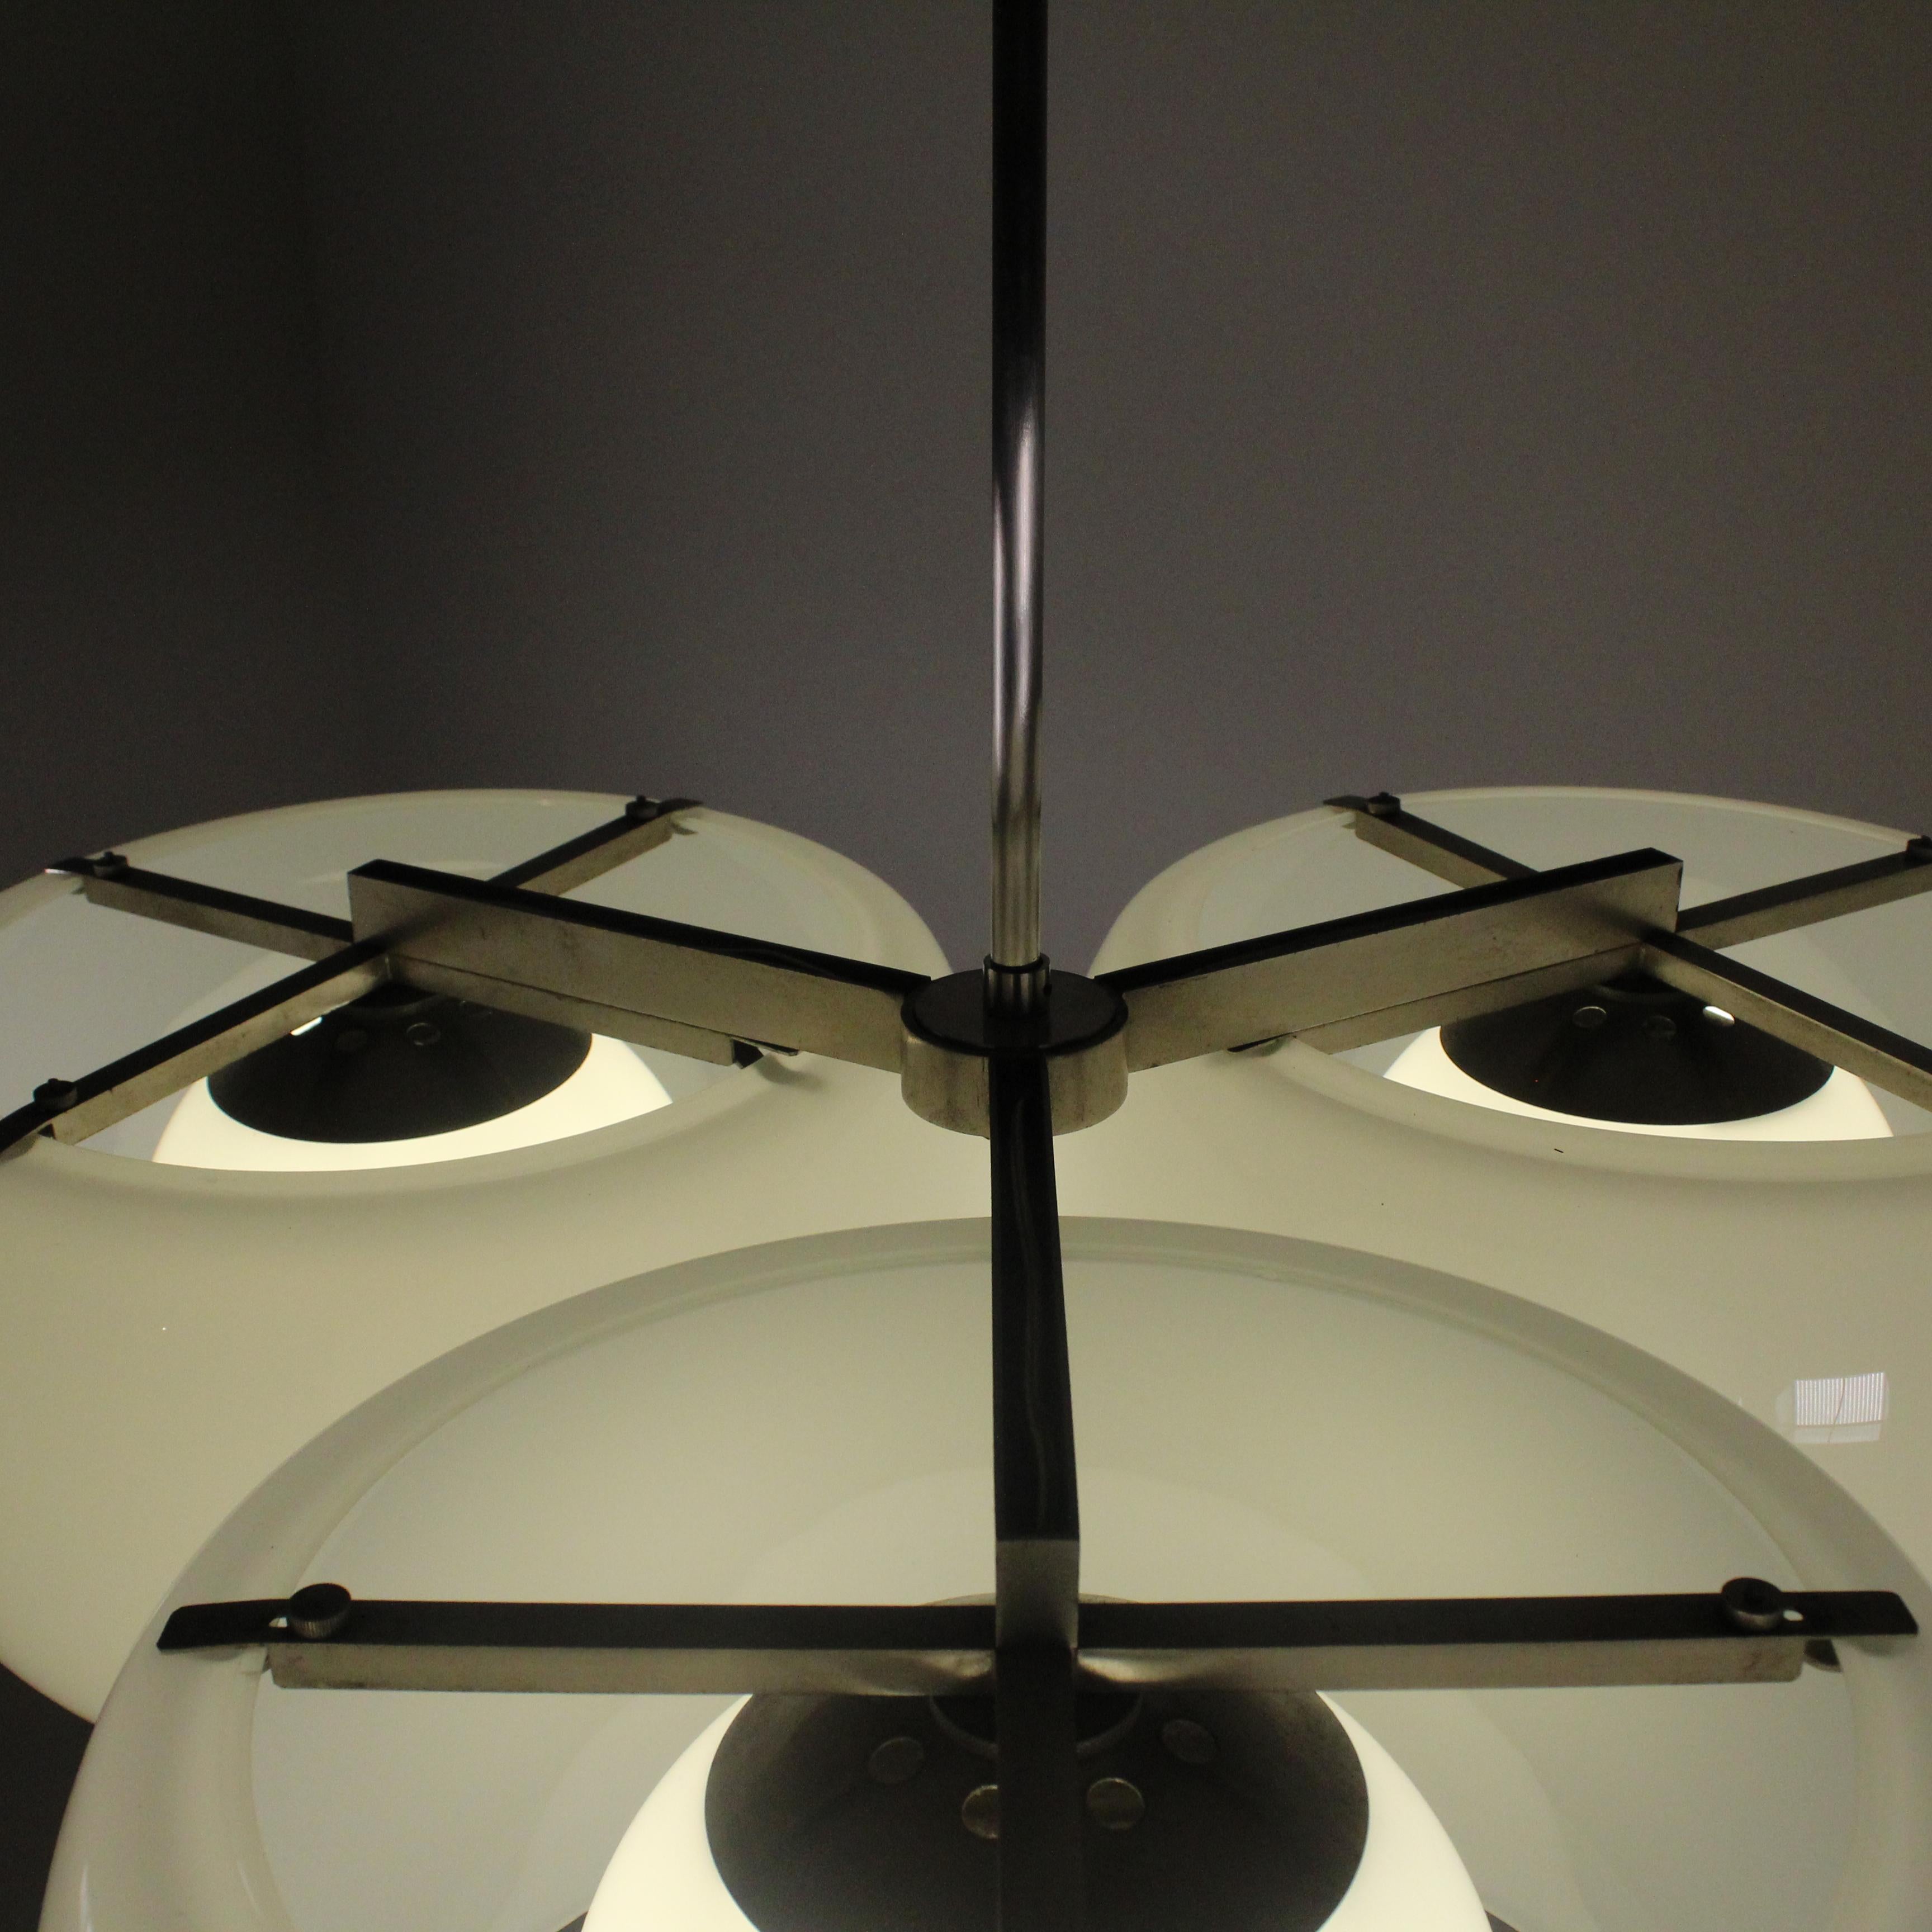 Der Triclinio-Kronleuchter von Vico Magistretti für Artemide aus dem Jahr 1961 ist ein emblematisches Werk des italienischen Designs. Seine kühne und innovative Struktur, die aus geschwungenen und gewundenen Elementen besteht, vermittelt ein Gefühl